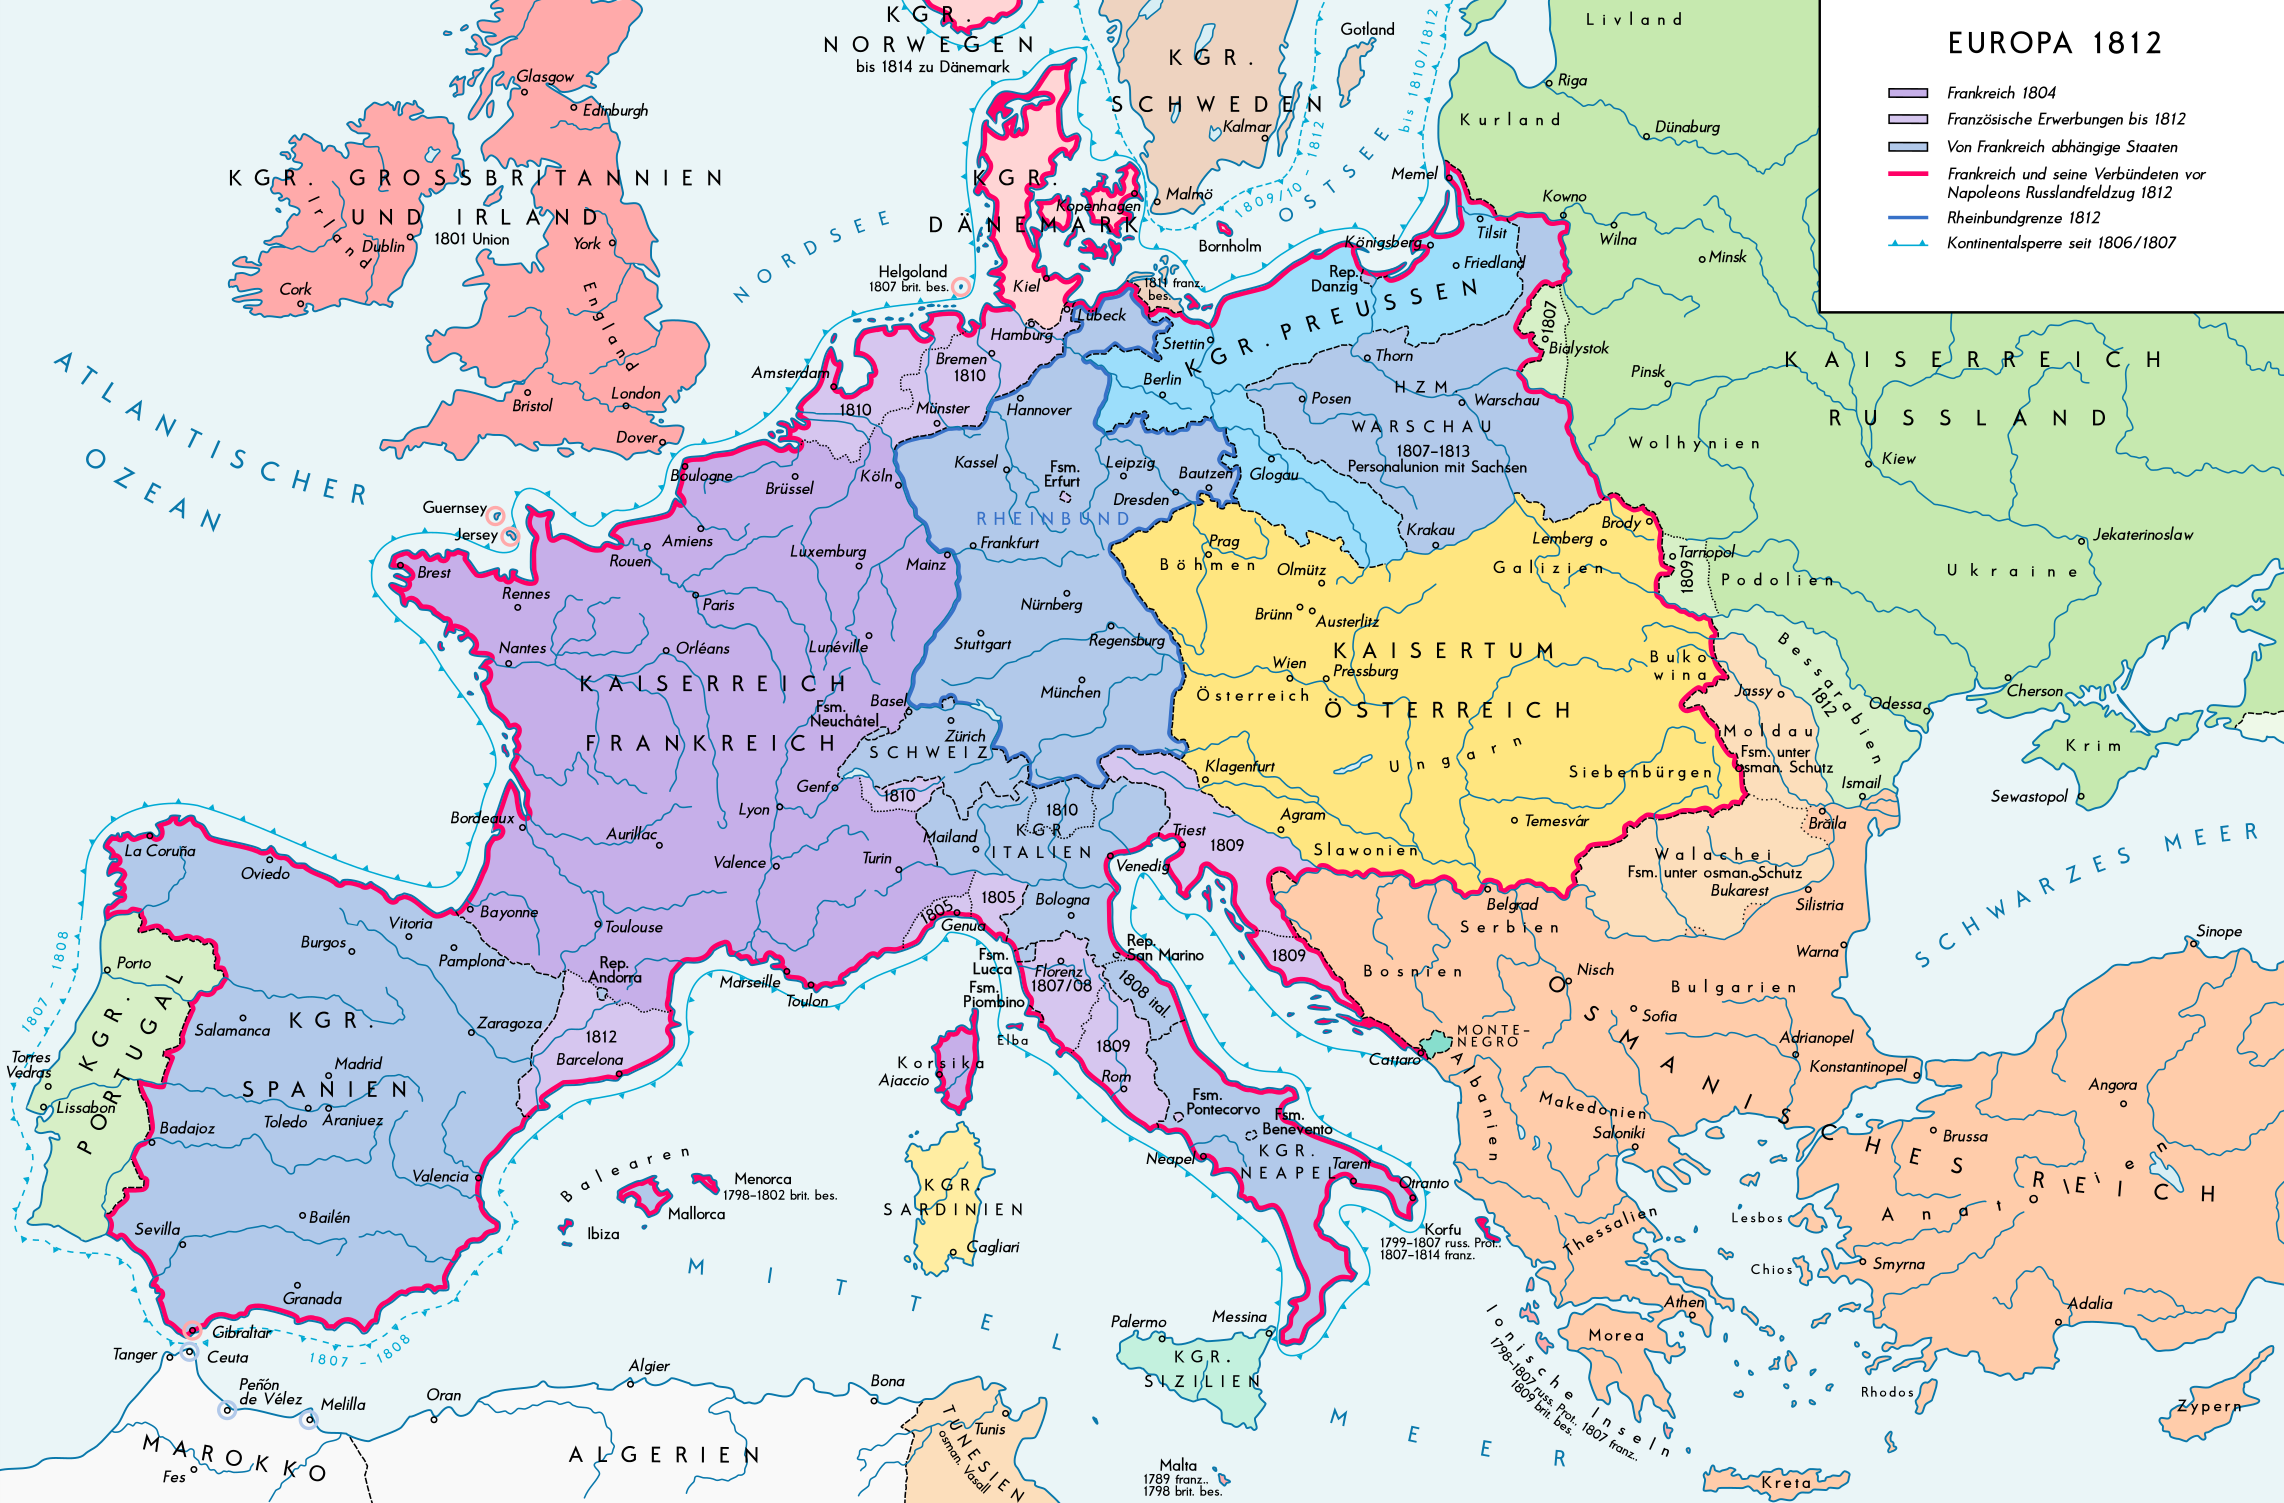 Europa unter der Kontrolle Napoleons bis 1812